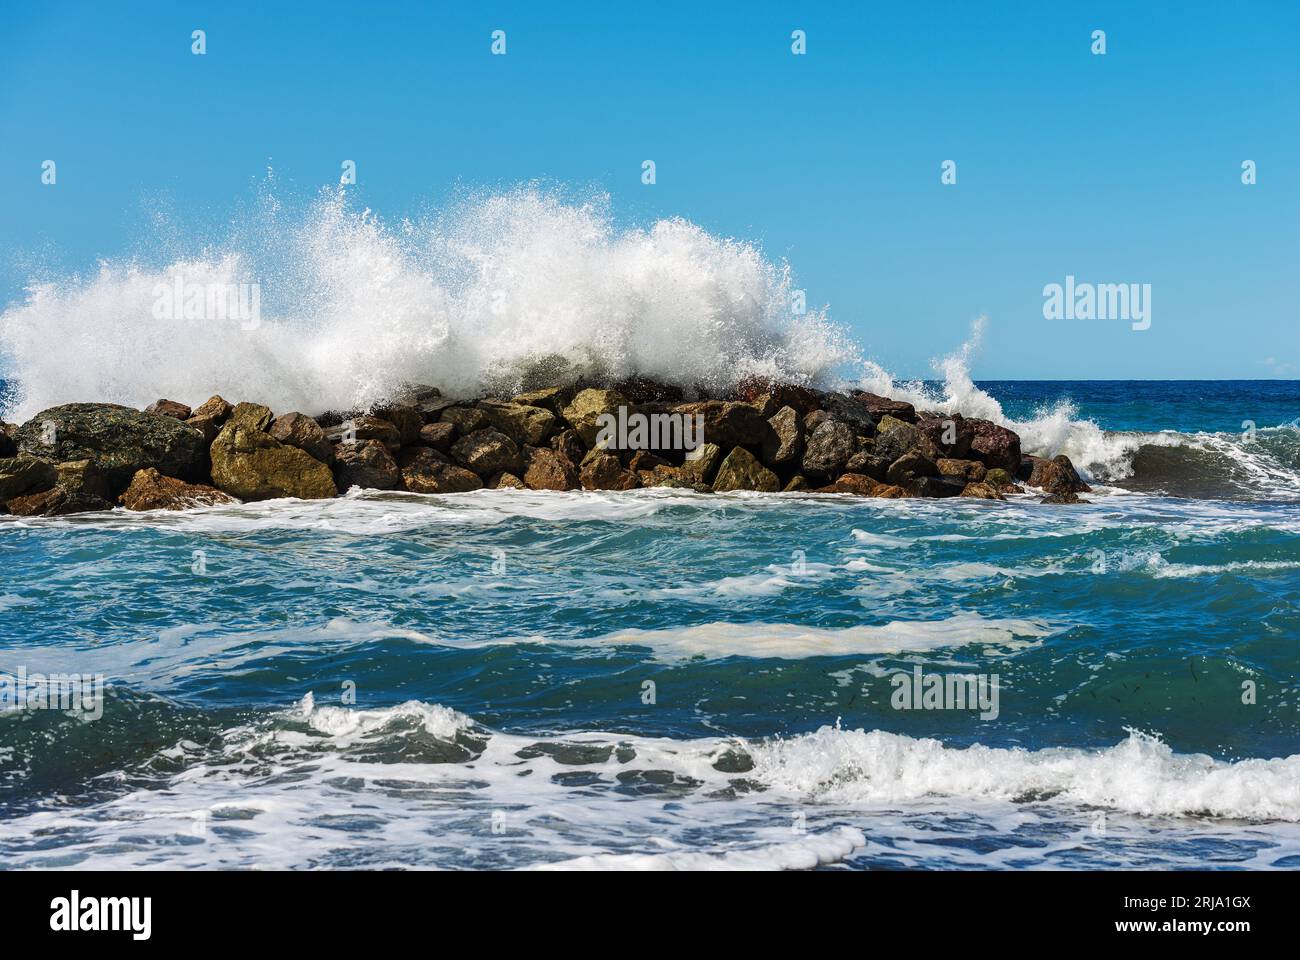 Große weiße Wellen des Meeres brechen auf den Felsen. Wellenbrecher in der Nähe des kleinen Dorfes Framura. La Spezia, Ligurien, Italien, Europa. Mittelmeer. Stockfoto